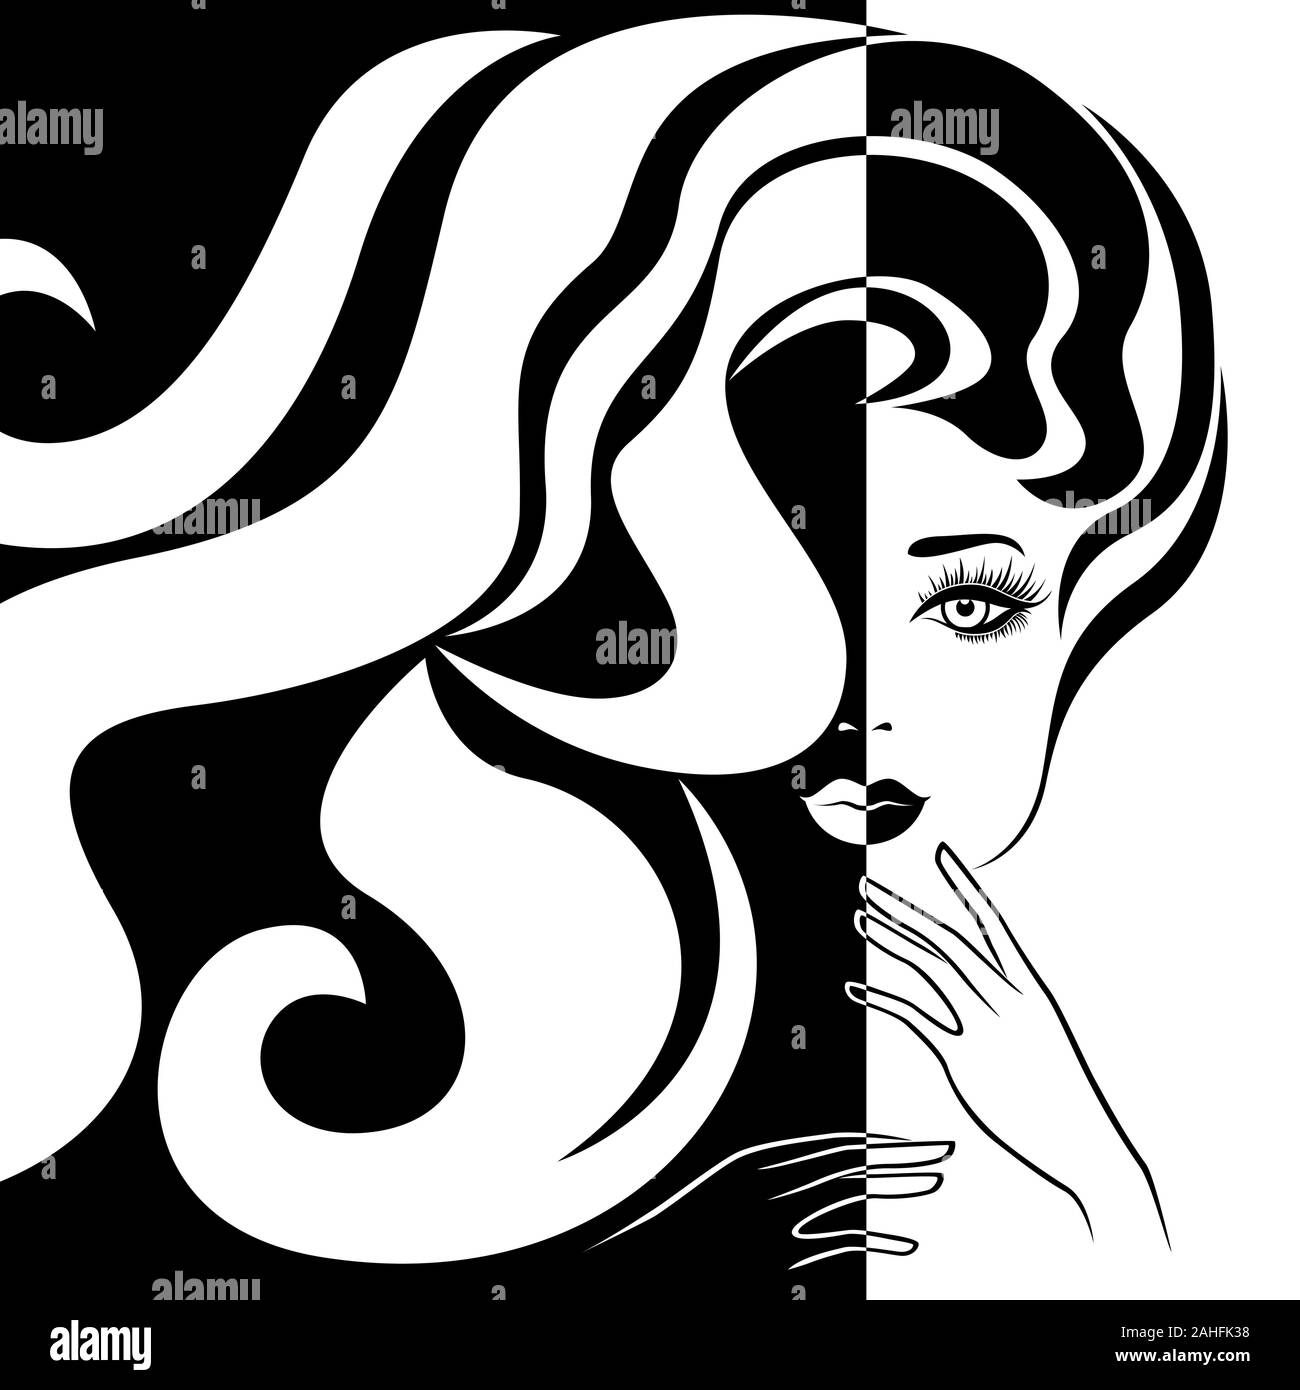 Abstrakte attraktive Frau mit langem Haar Split in Negativ Positiv Raum, Schwarze und Weiße konzeptionelle Ausdruck, hand Zeichnung Abbildung Stock Vektor